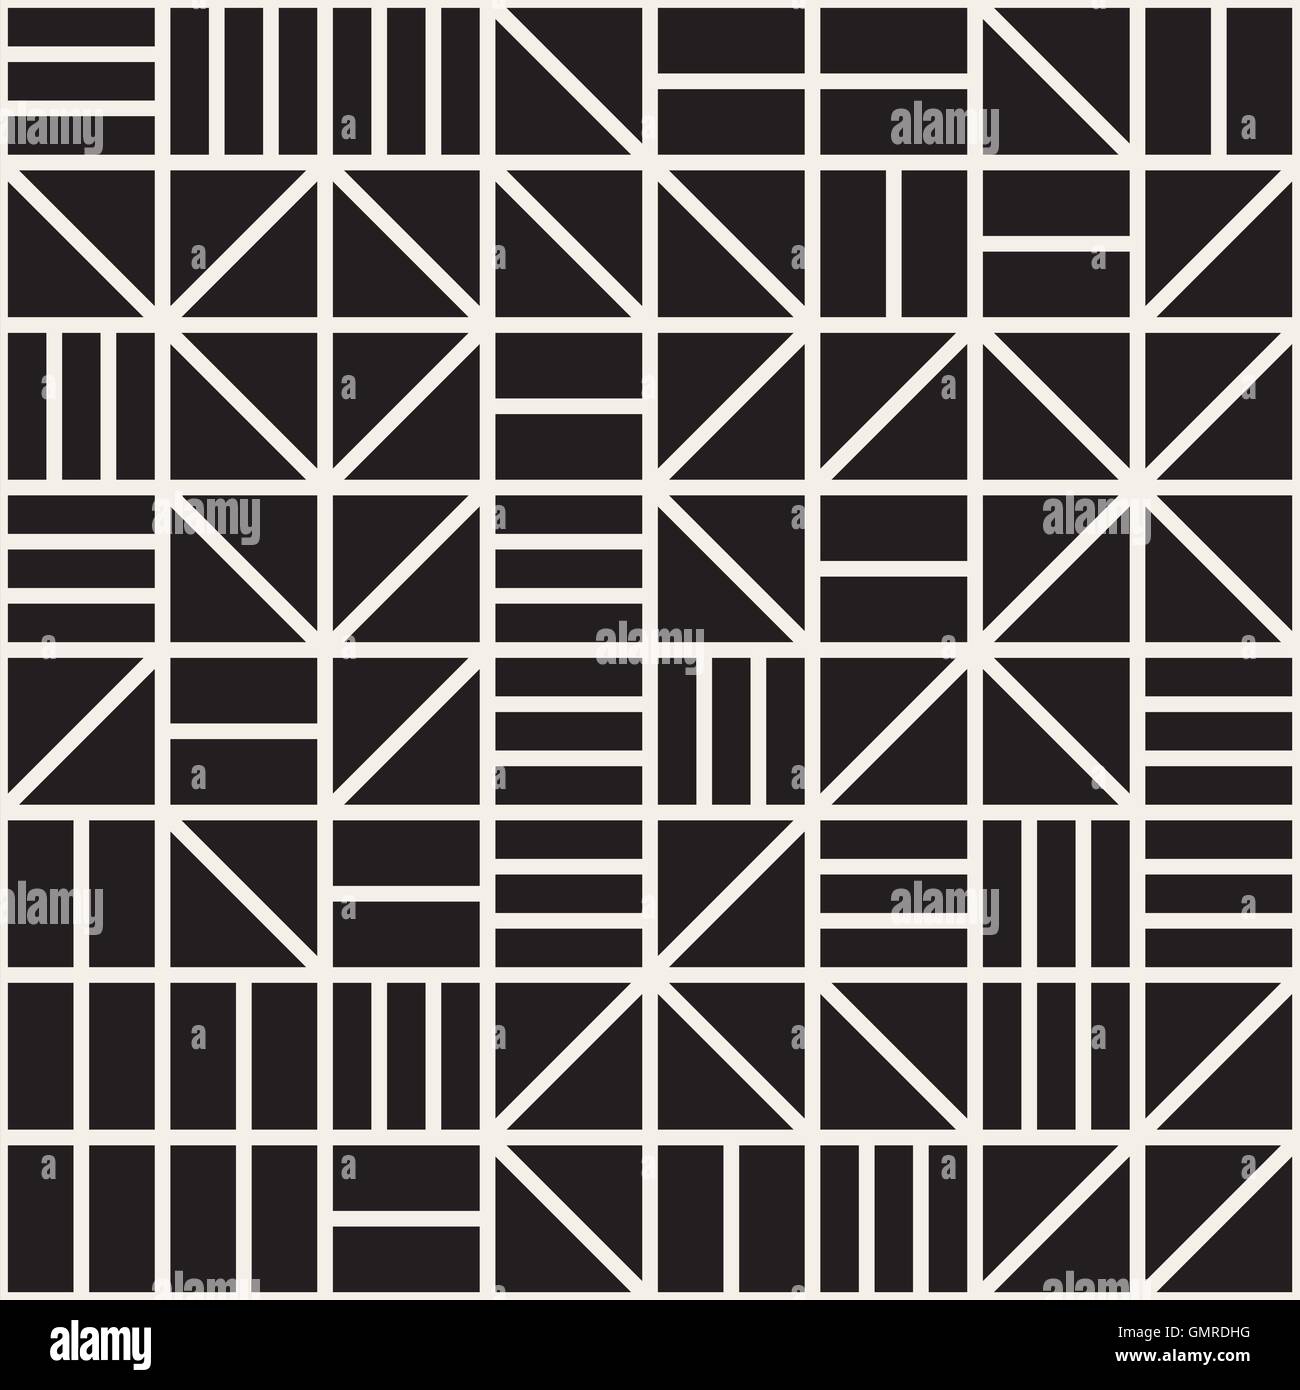 Vektor nahtlose schwarz-weiß unregelmäßige geometrische Raster Linienmuster Stock Vektor